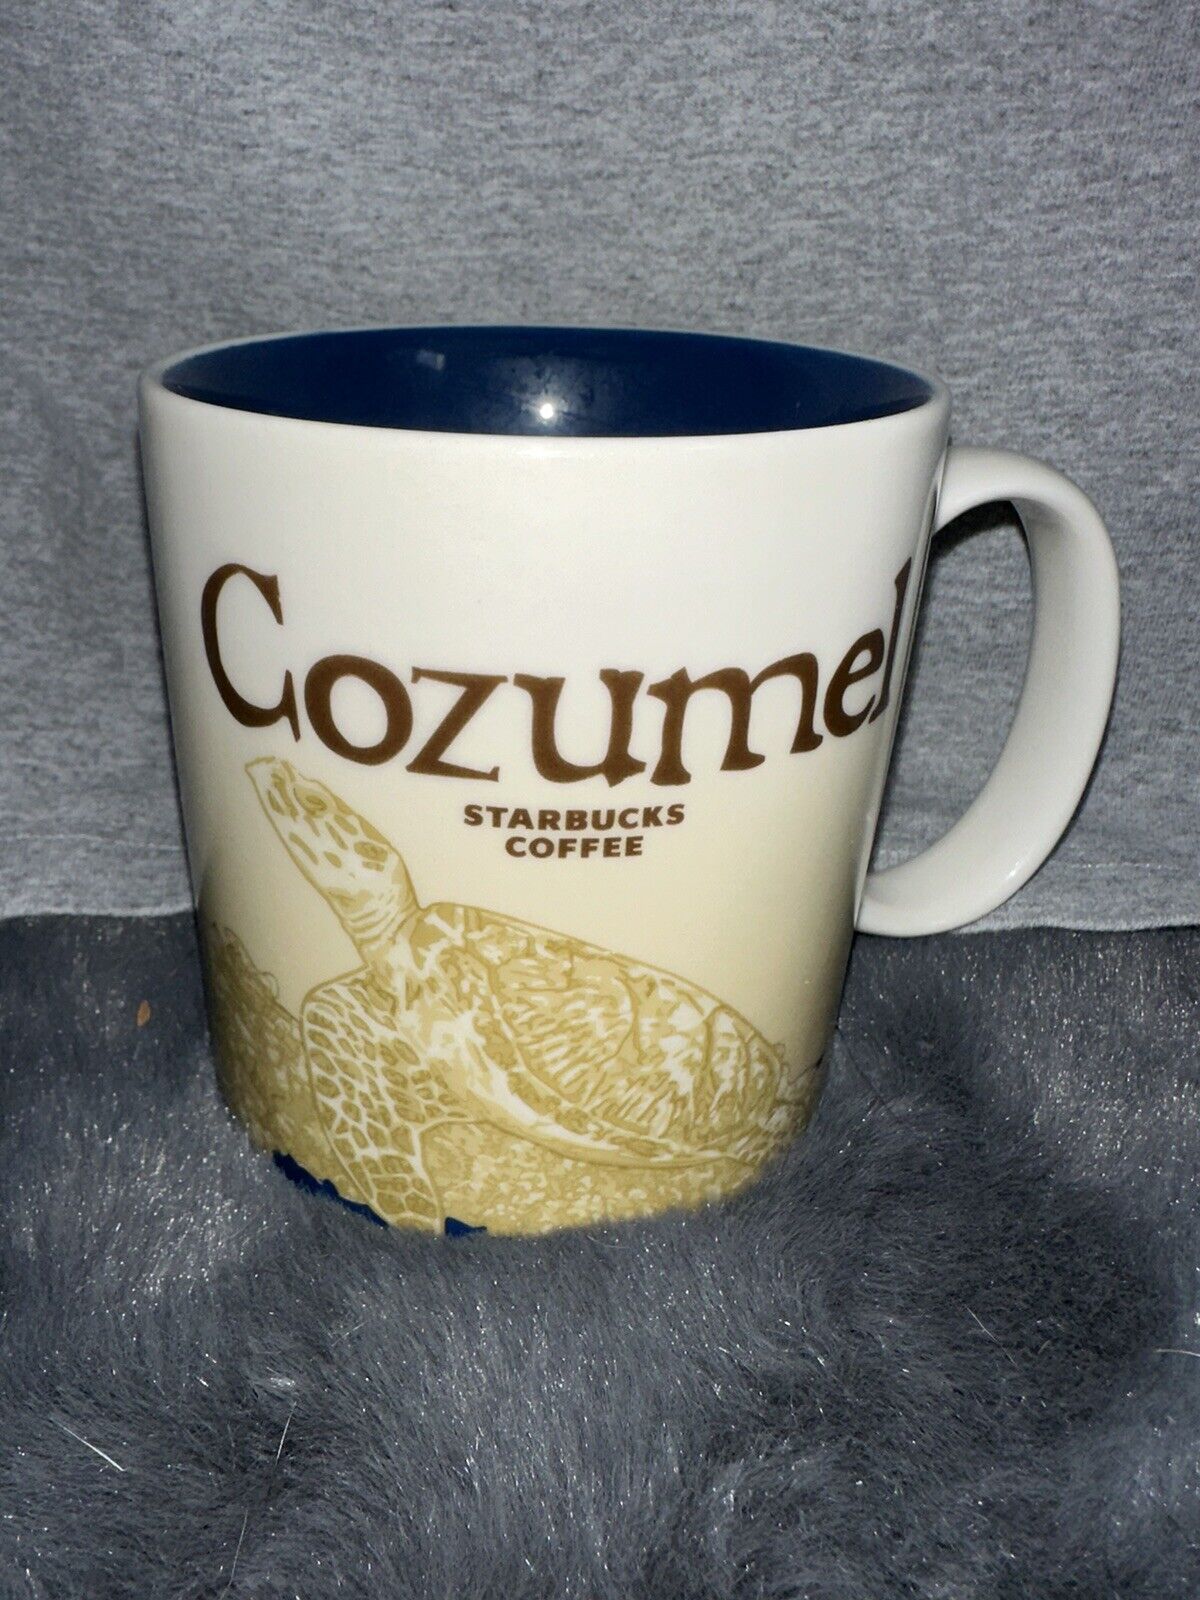 Starbucks Mug 2011 Cozumel/Florida Collector Series 16 Oz